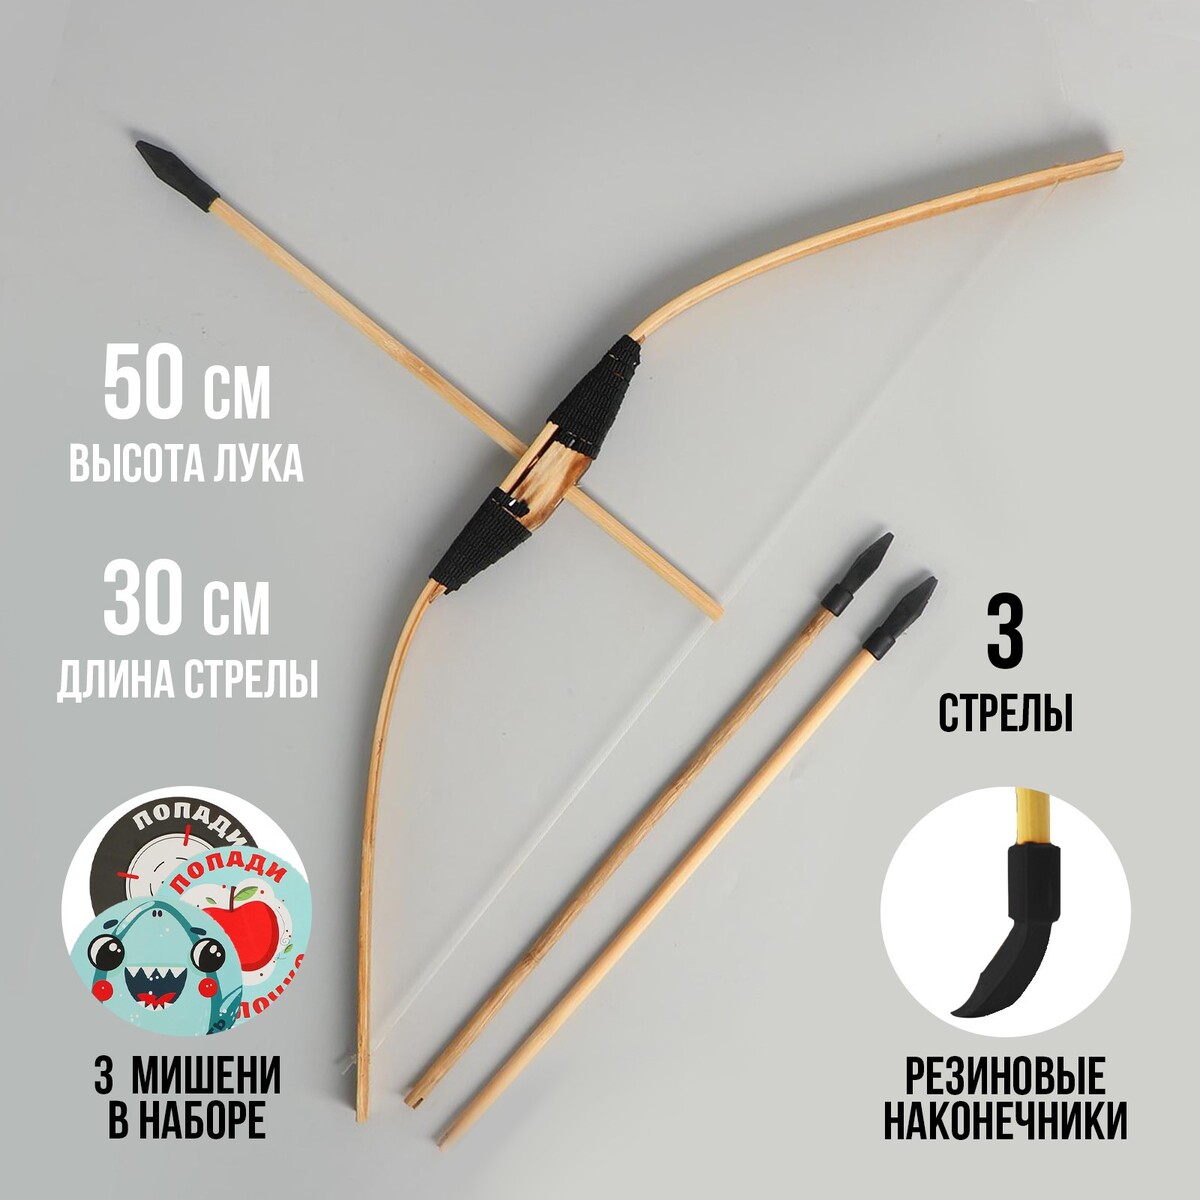 Лук и стрелы набор для стрельбы из лука centershot лук игрушечный кейс мишень стрелы